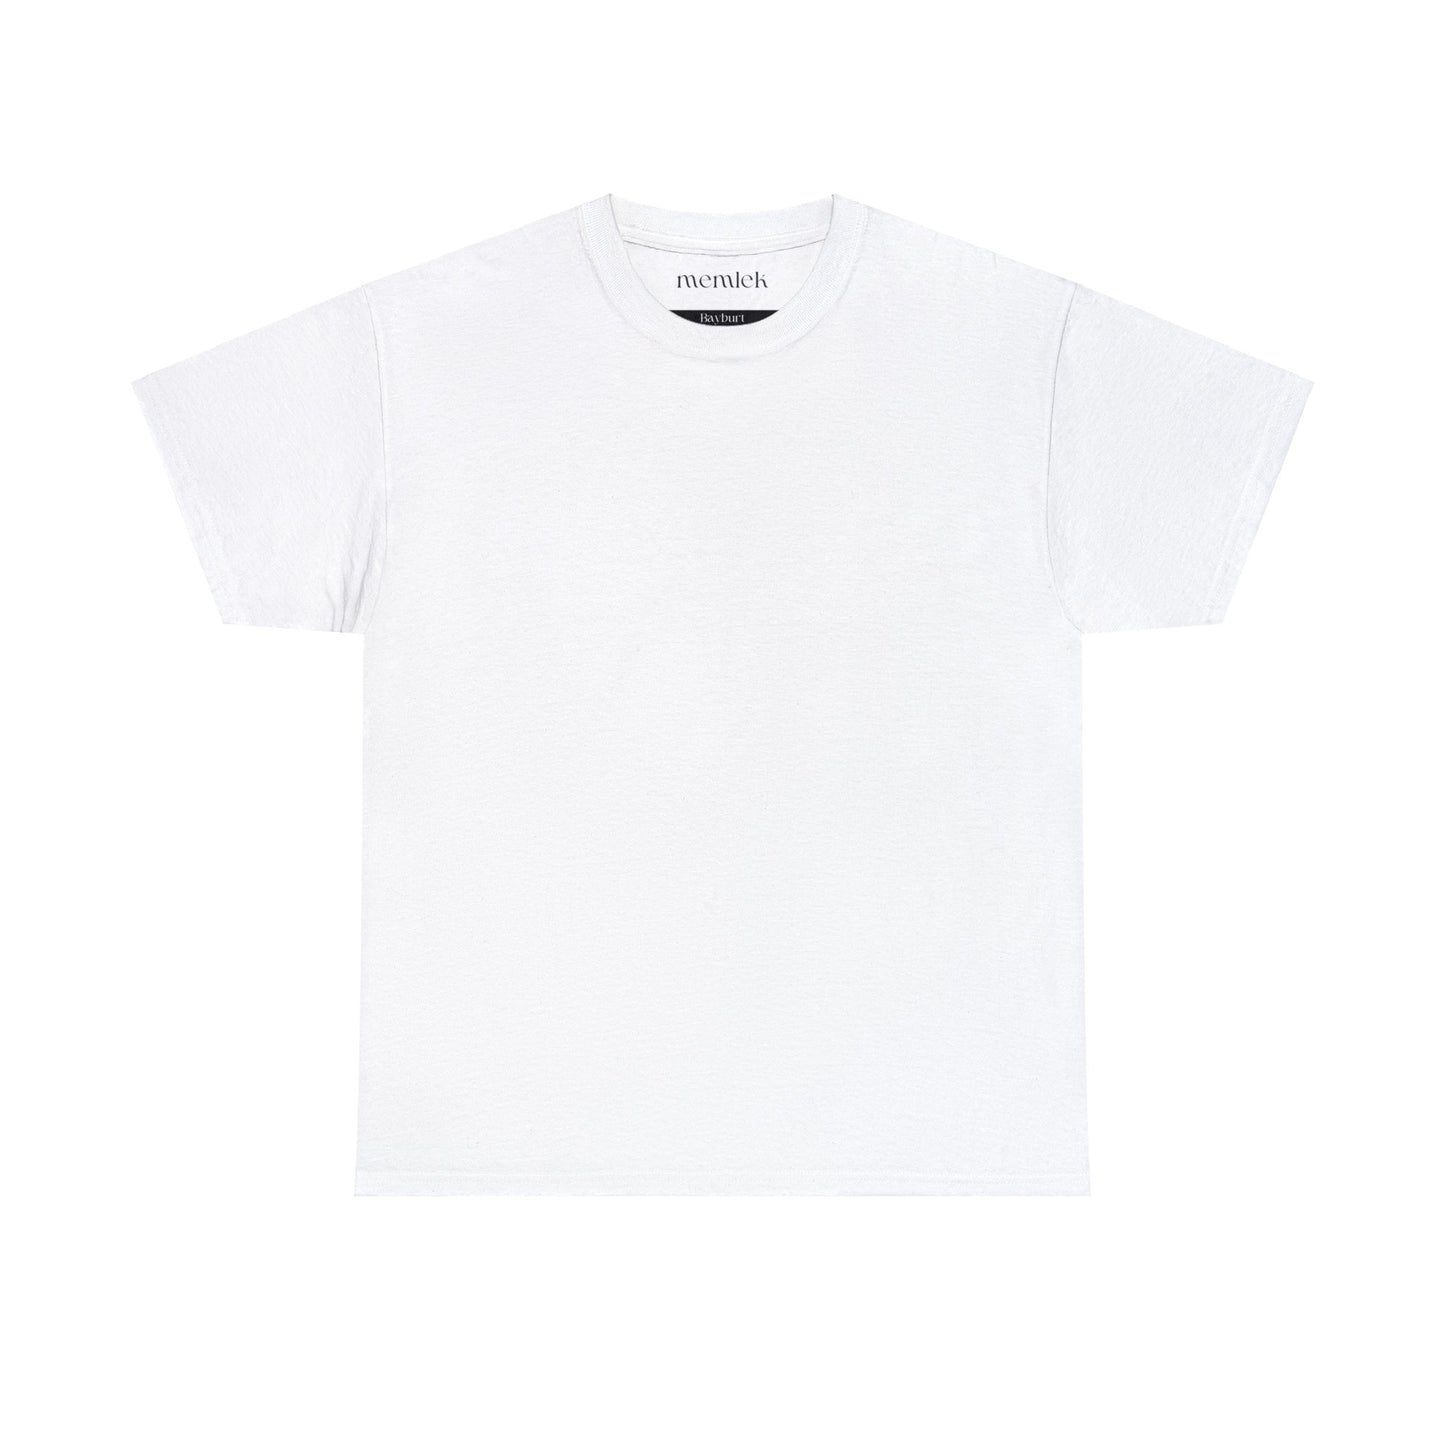 Siyah Lale - 69 Bayburt - T-Shirt - Back Print - Black/White